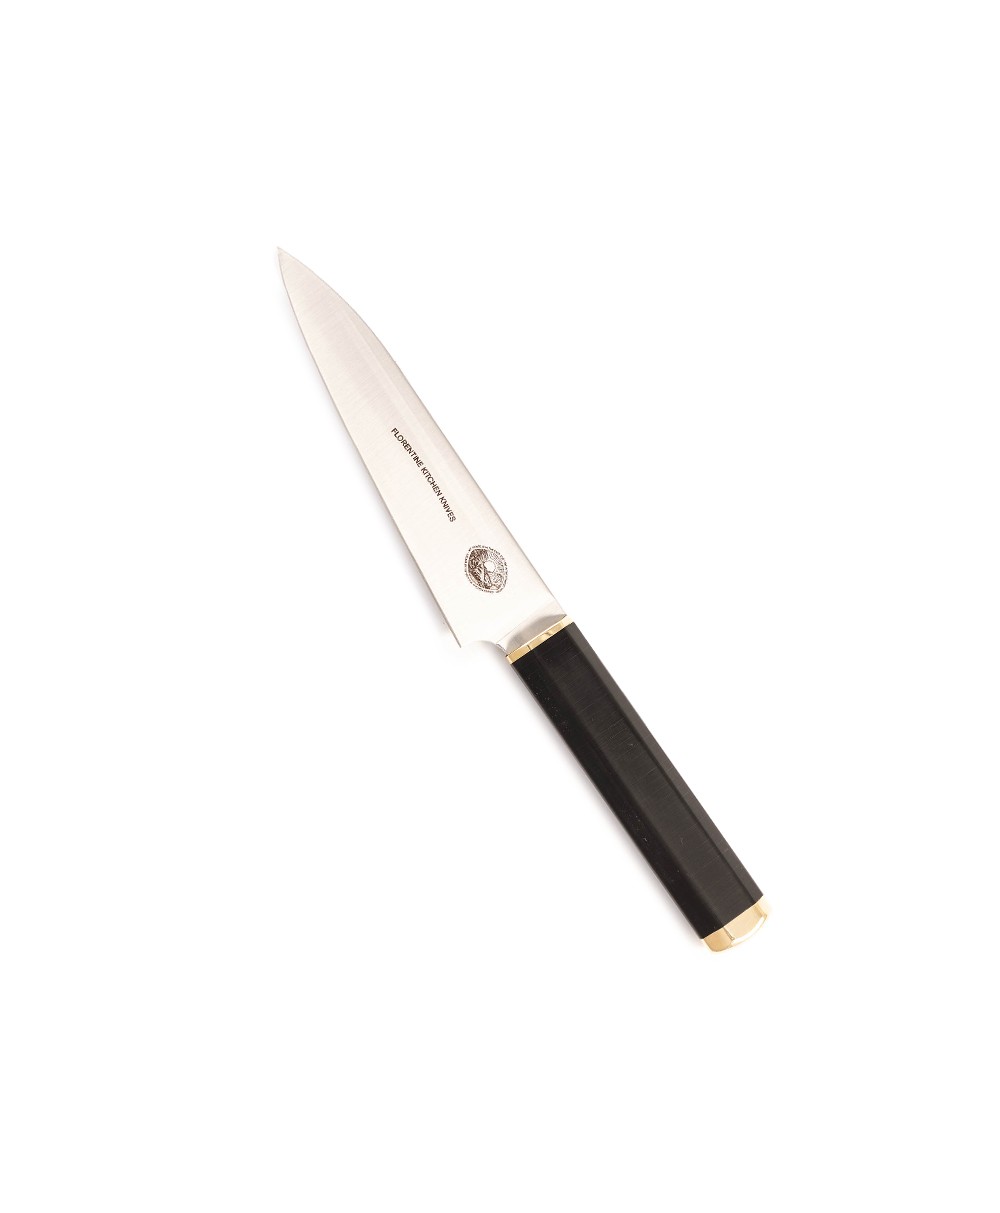 Produktbild des Kedma Petty Küchenmesser in black von Florentine Kitchen Knives im RAUM concept store 